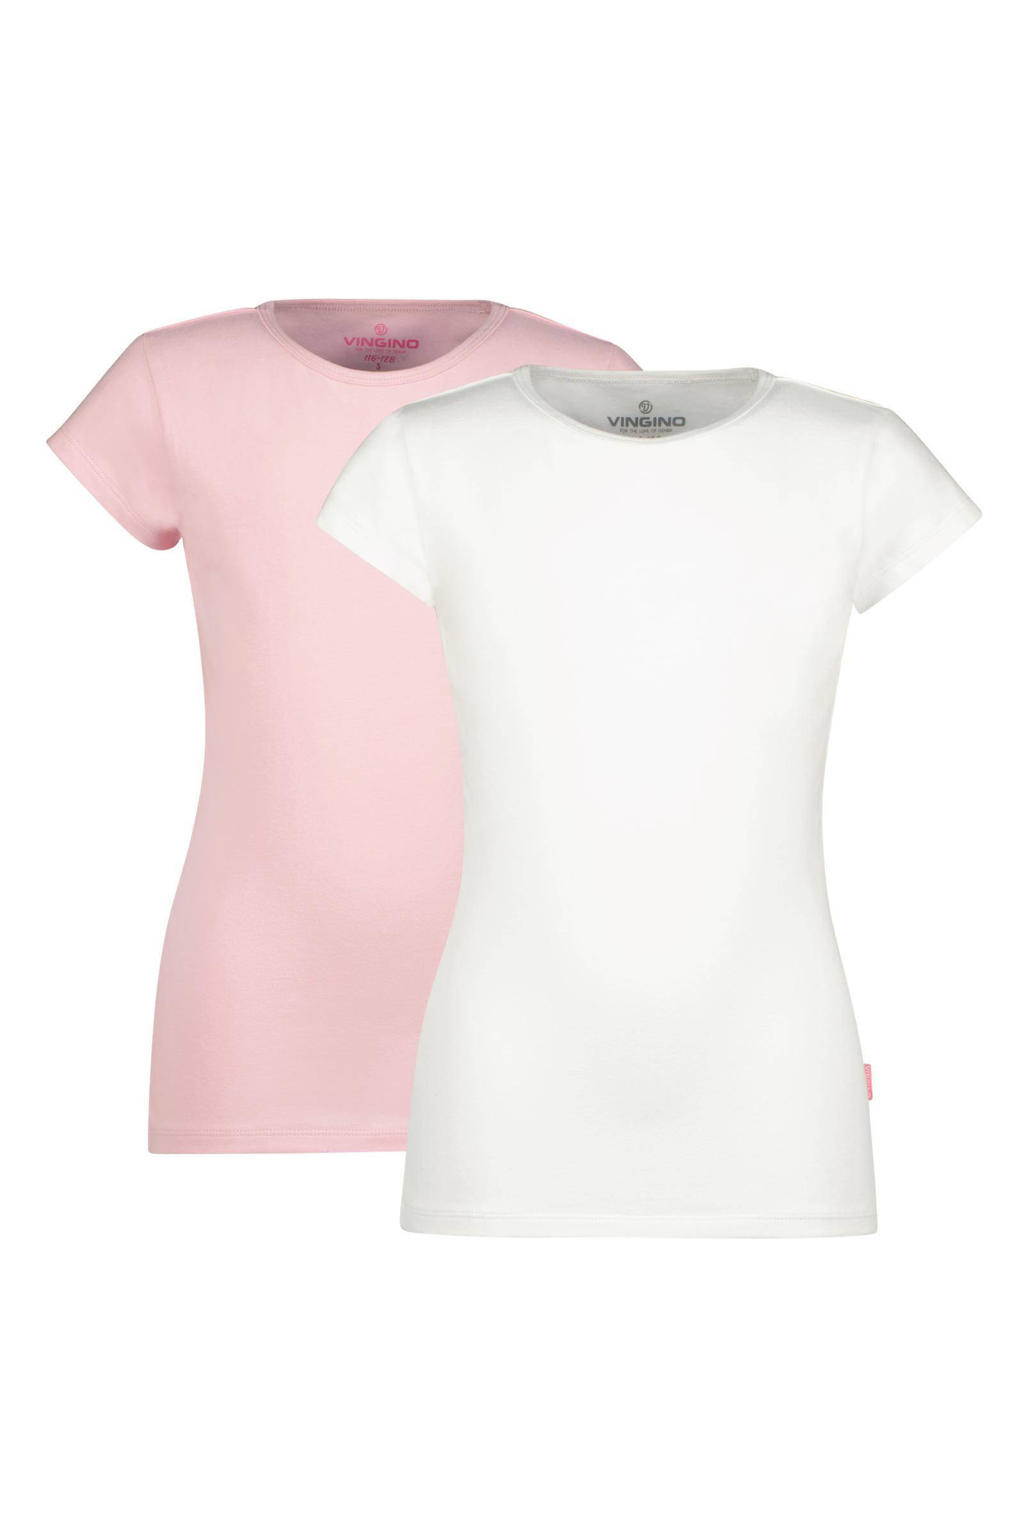 Set van 2 roze en witte meisjes Vingino T-shirt van duurzaam stretchkatoen met korte mouwen en ronde hals